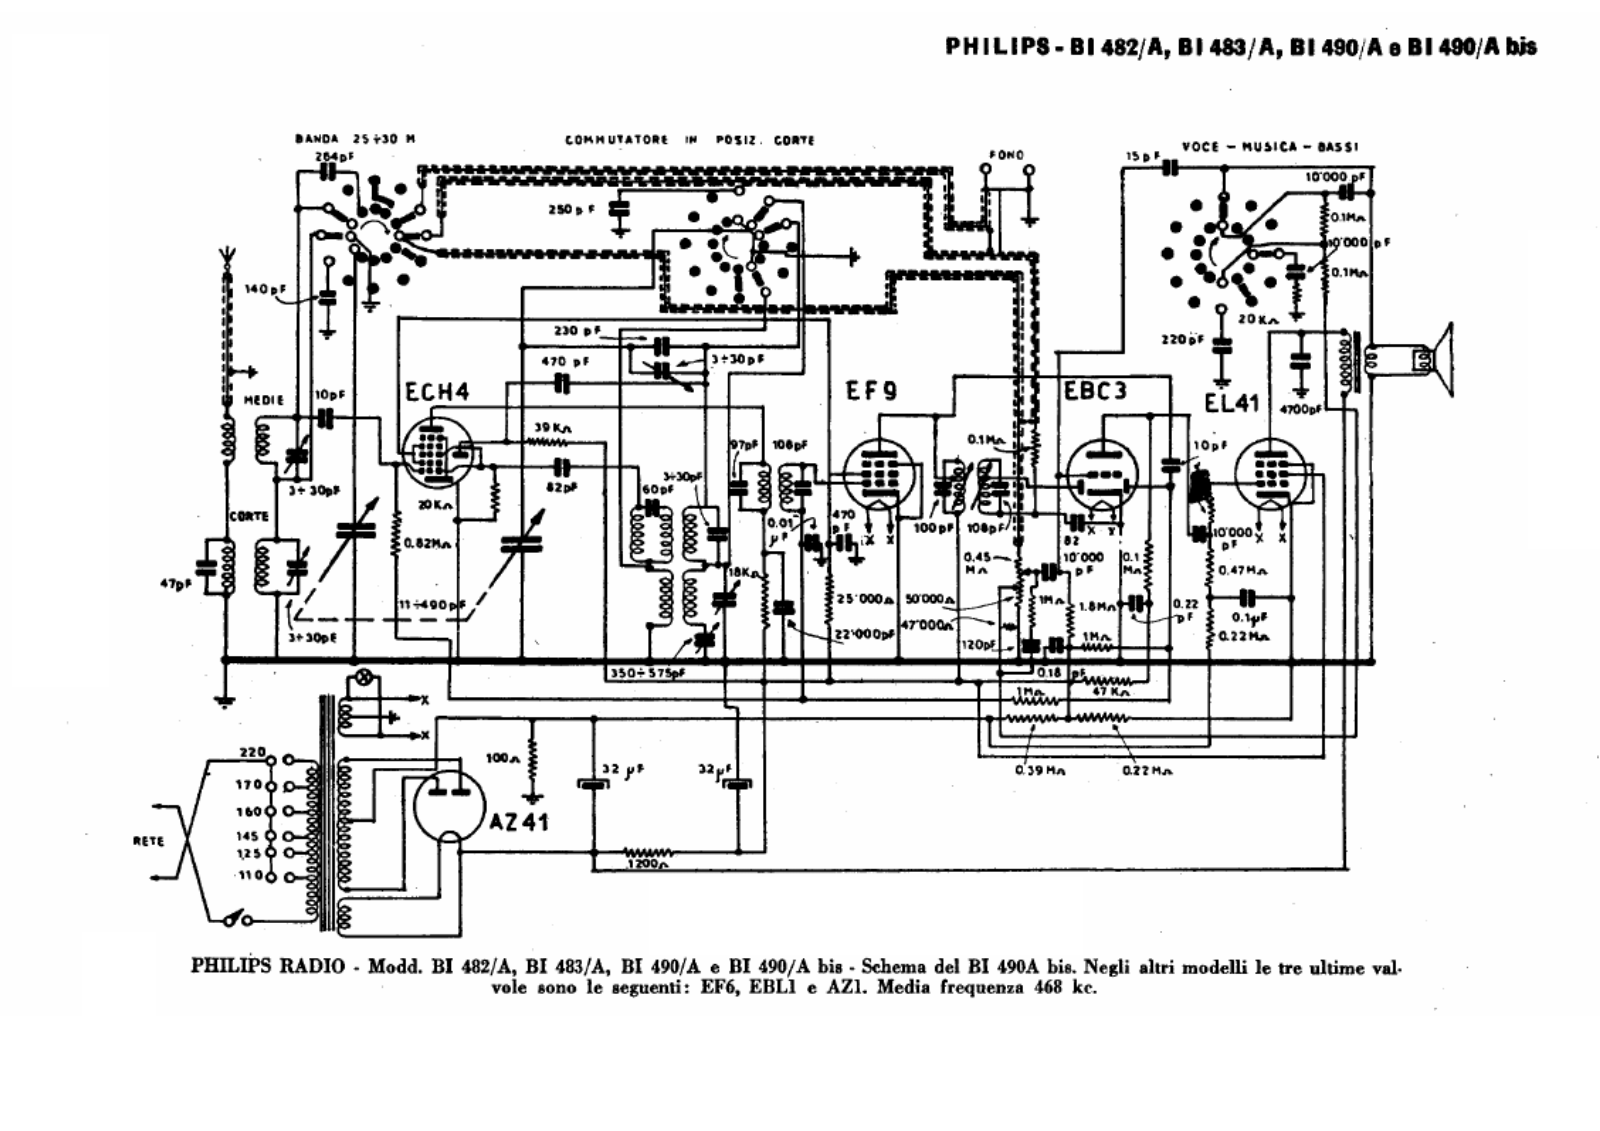 Philips bi482a, bi483a, bi490a schematic